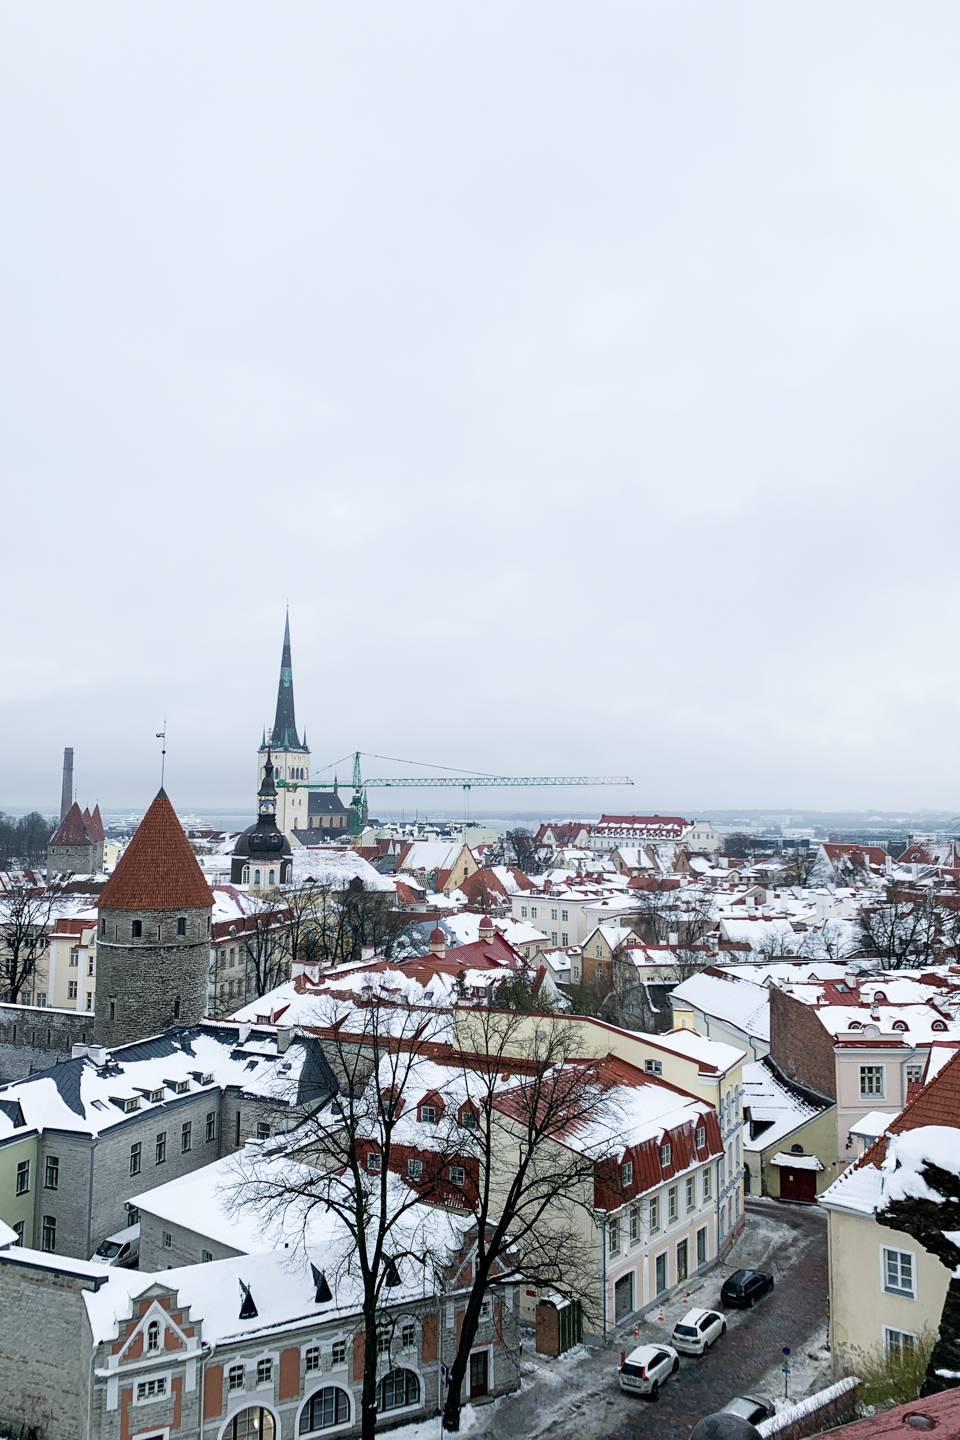 Tallinn Old Town as seen from hill